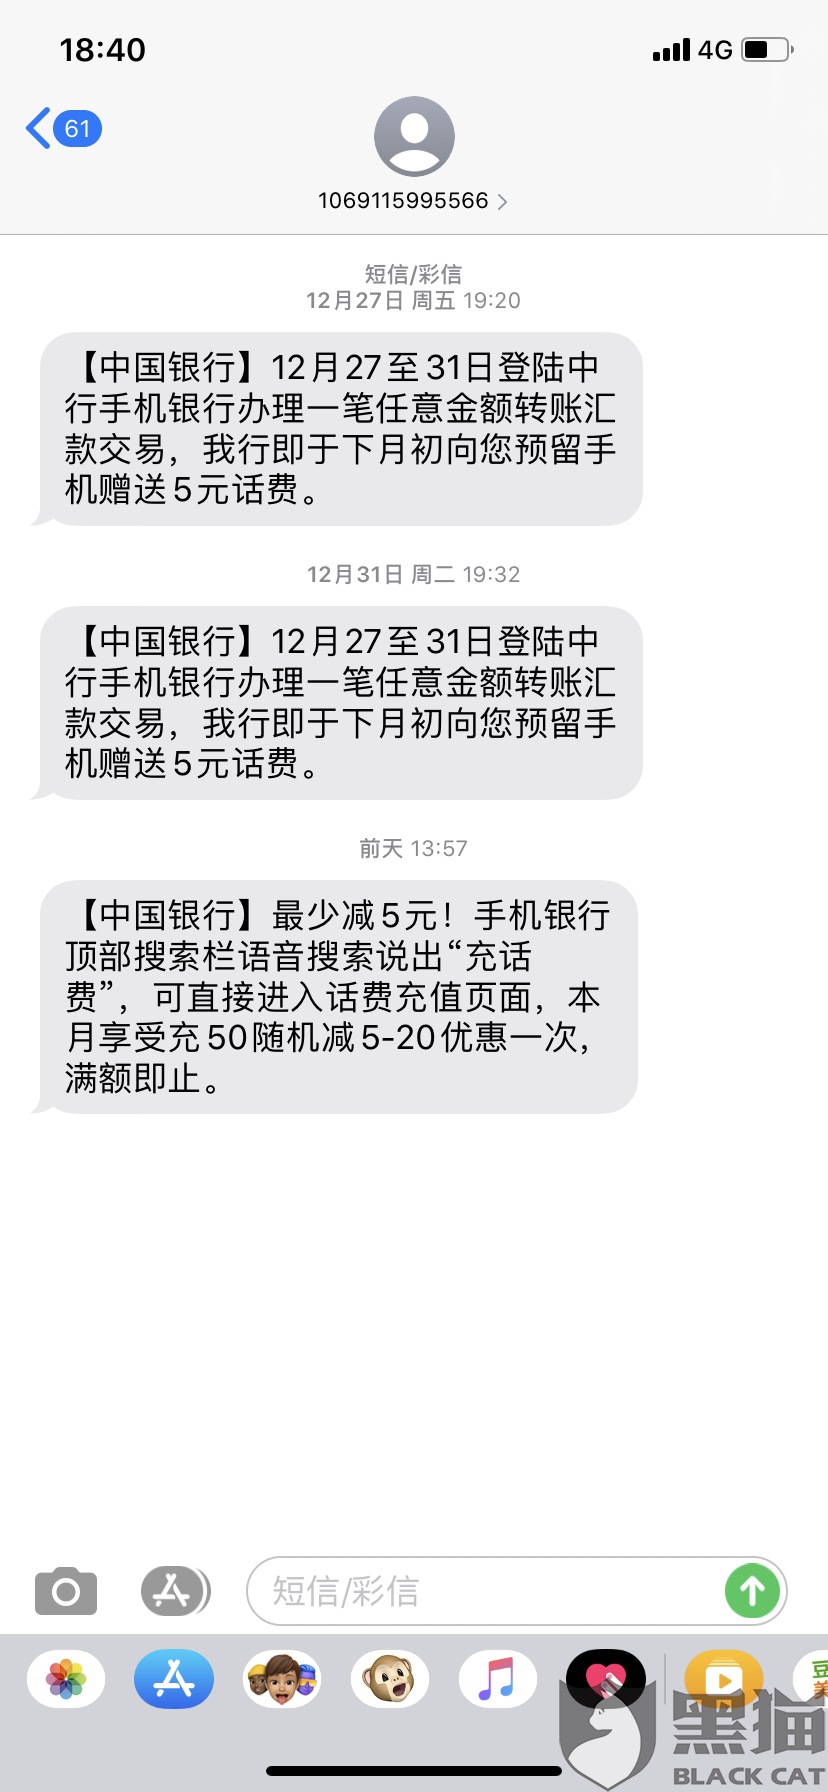 黑猫投诉中国银行转账送话费虚假活动欺骗客户